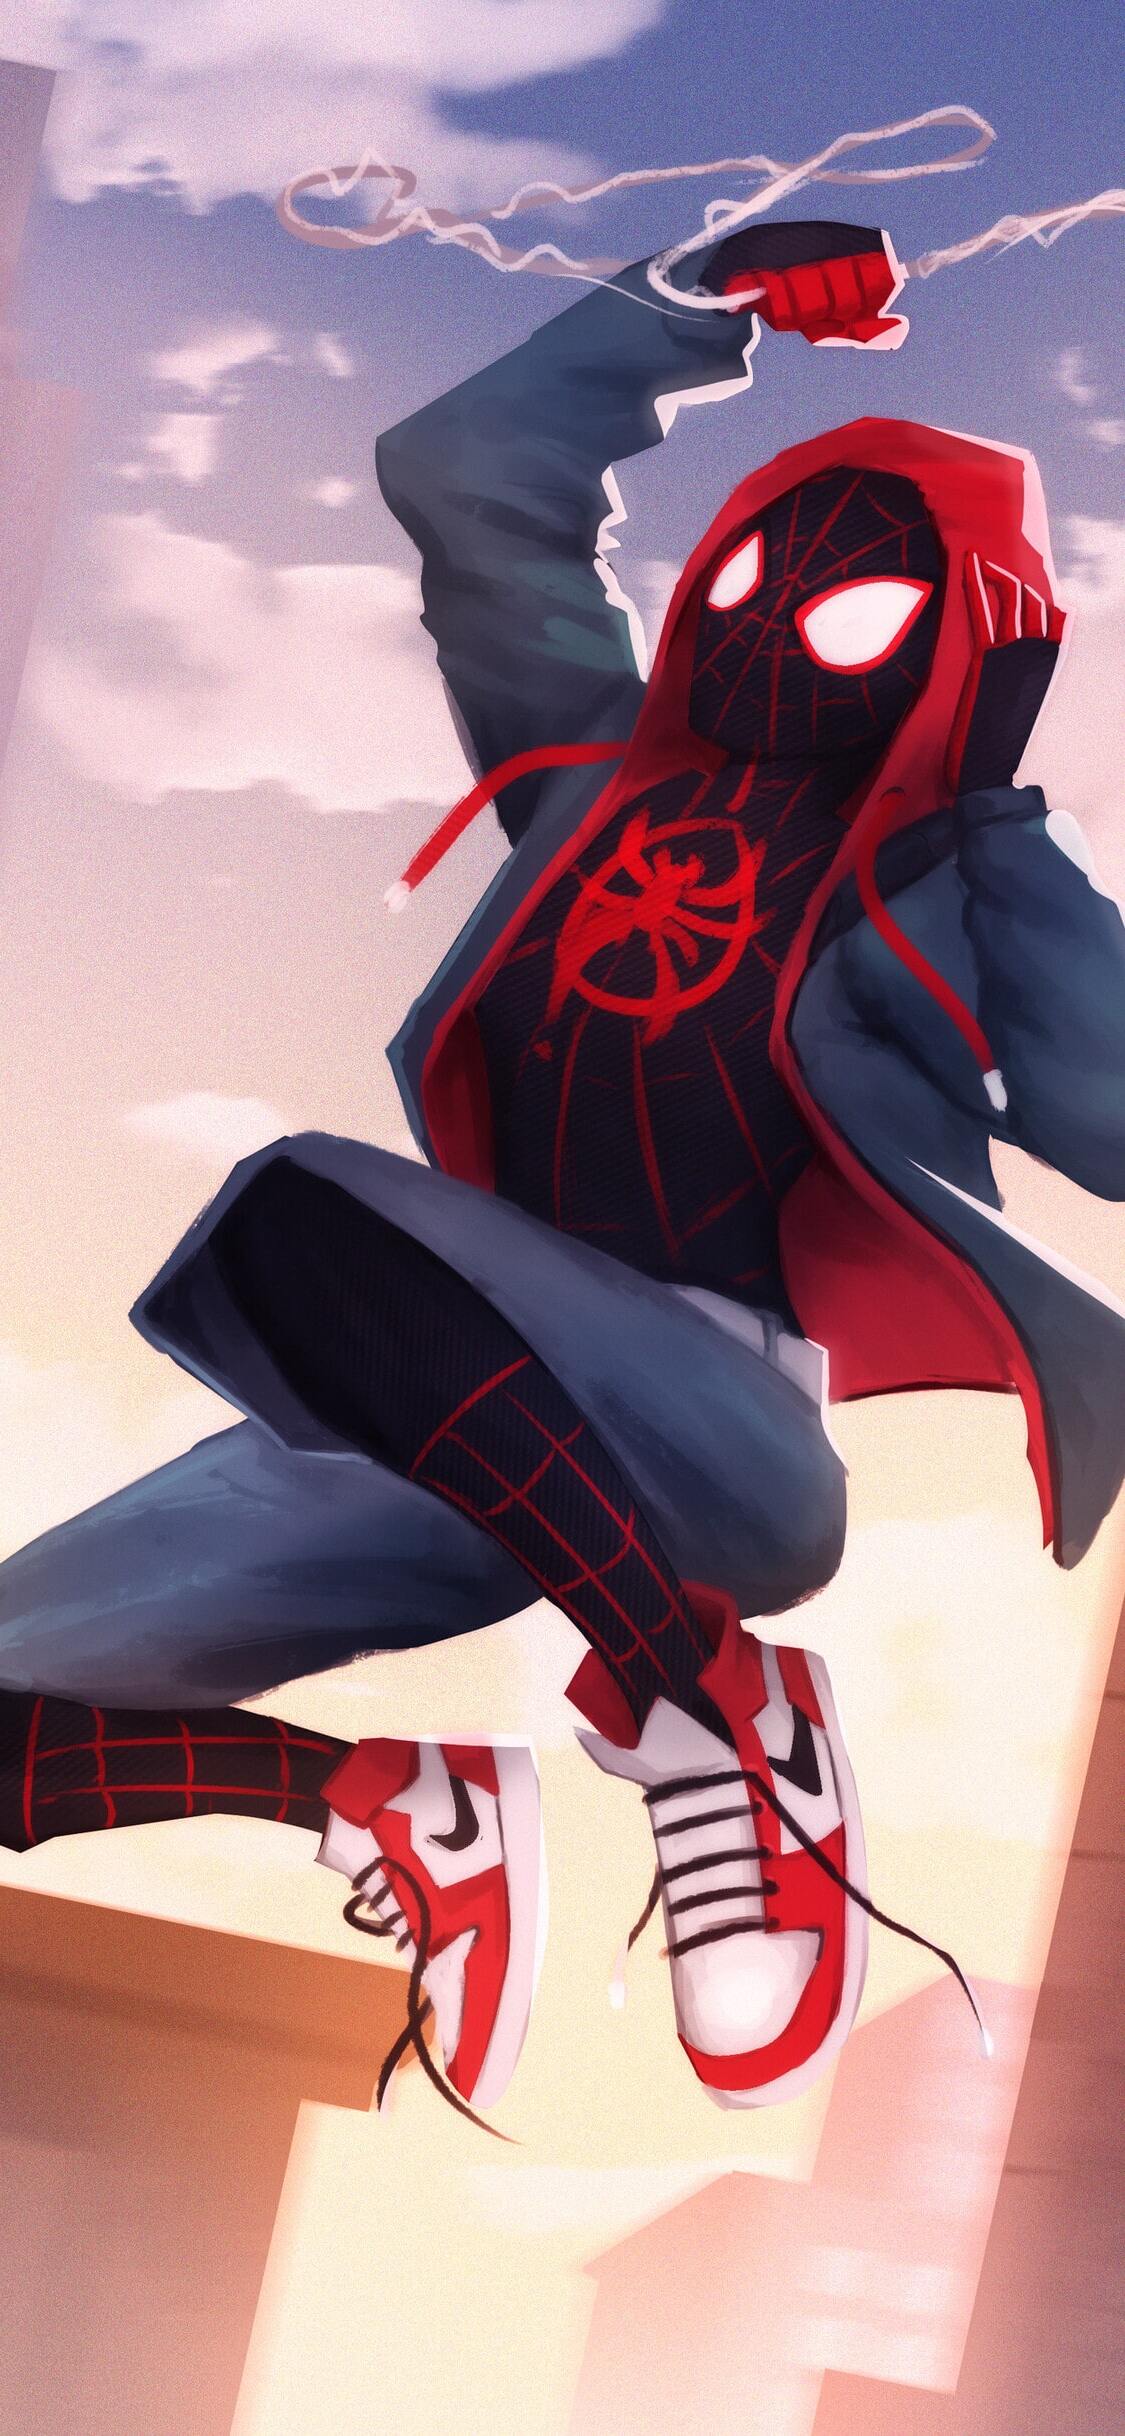 Spider-Man Spider-Verse Wallpaper 2